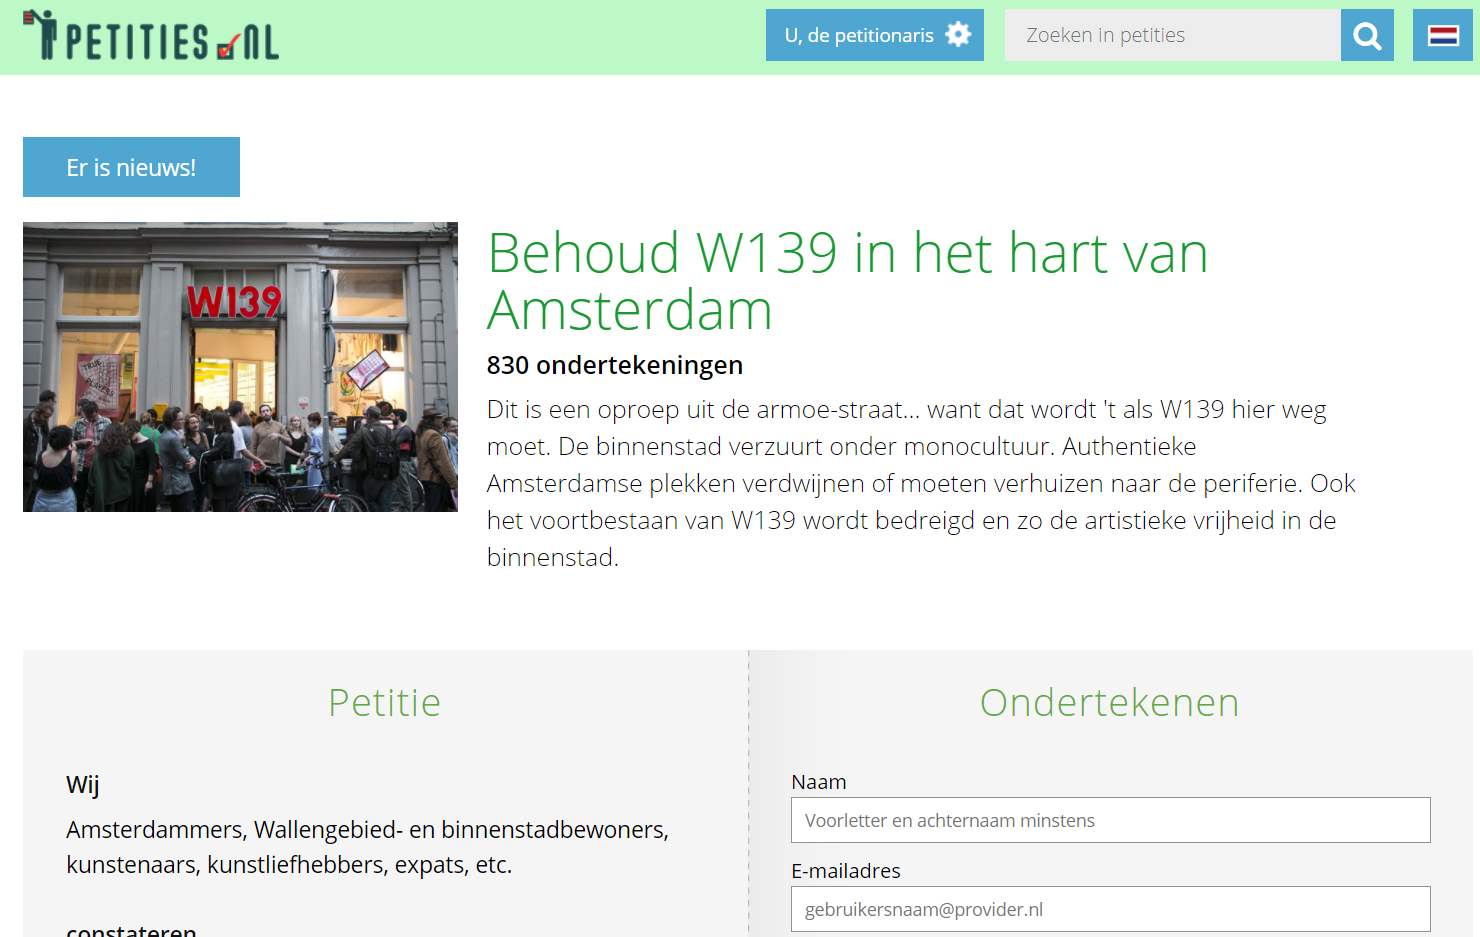 Petitie: Behoud W139 in het hart van Amsterdam